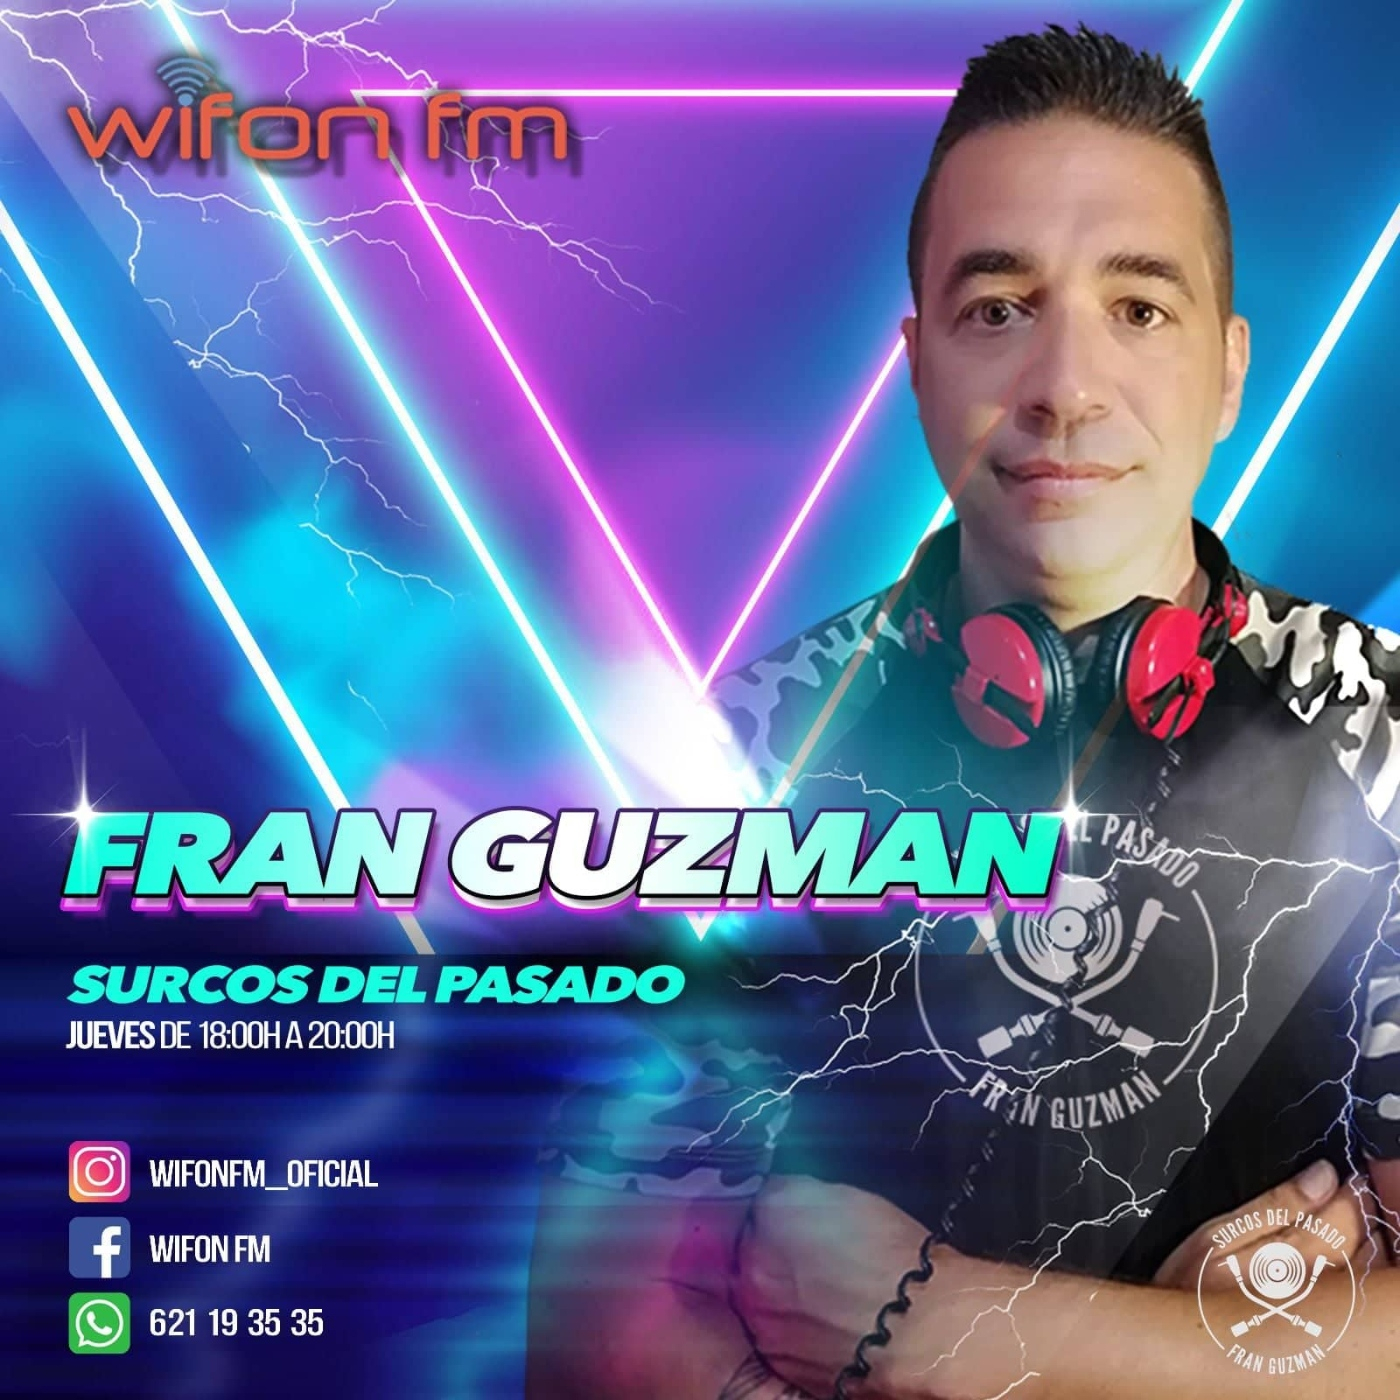 Fran Guzman Surcos del Pasado Wifon Fm T5.13